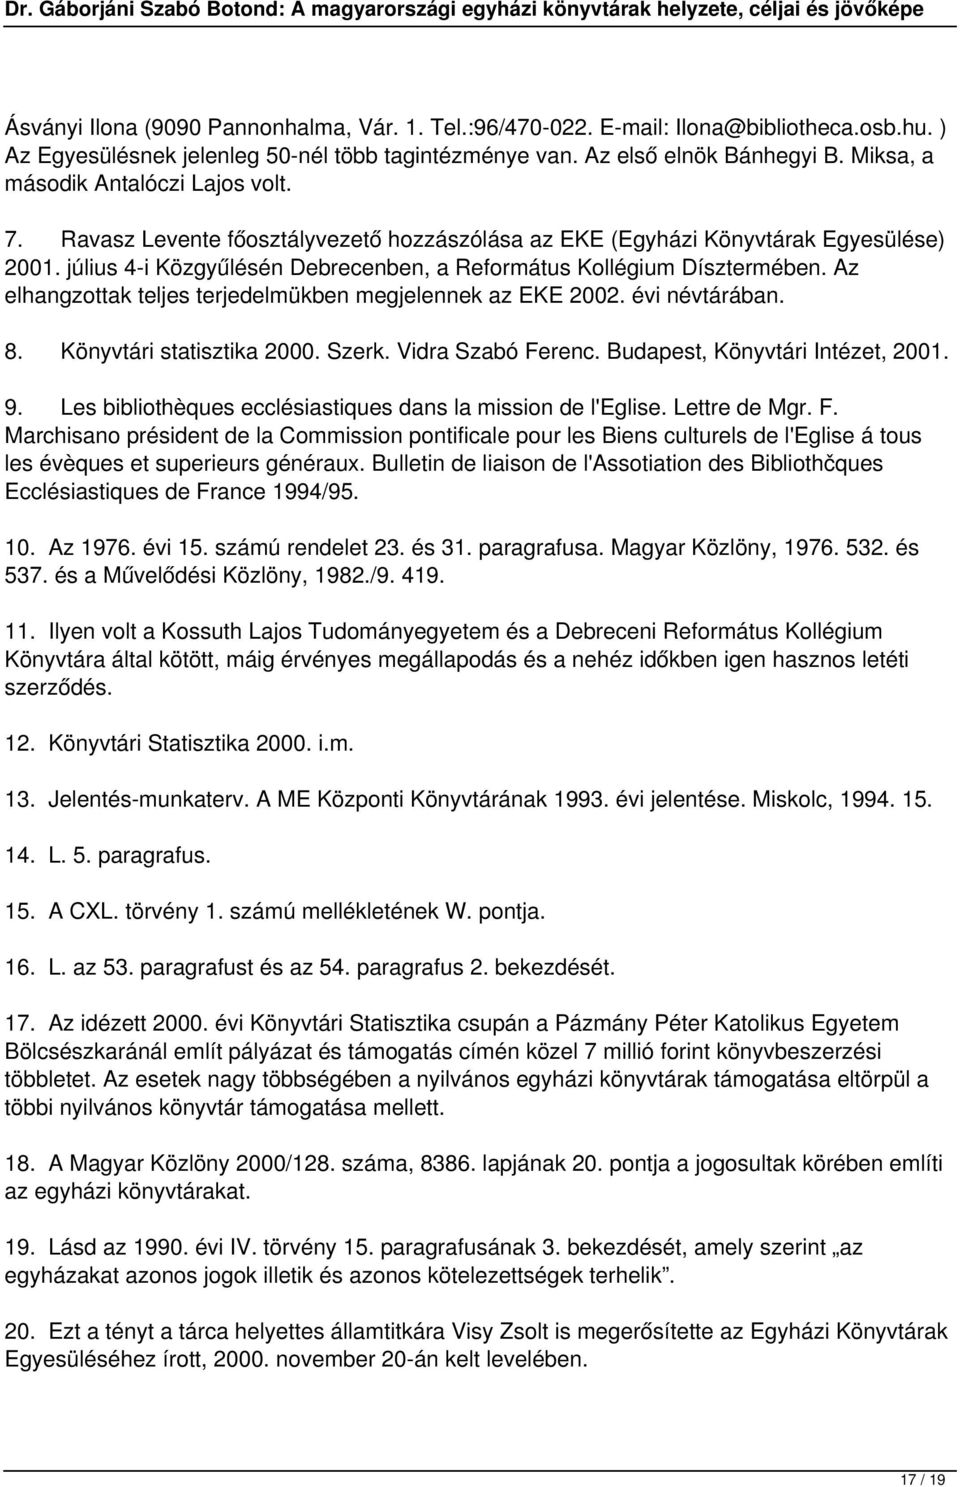 július 4-i Közgyűlésén Debrecenben, a Református Kollégium Dísztermében. Az elhangzottak teljes terjedelmükben megjelennek az EKE 2002. évi névtárában. 8. Könyvtári statisztika 2000. Szerk.